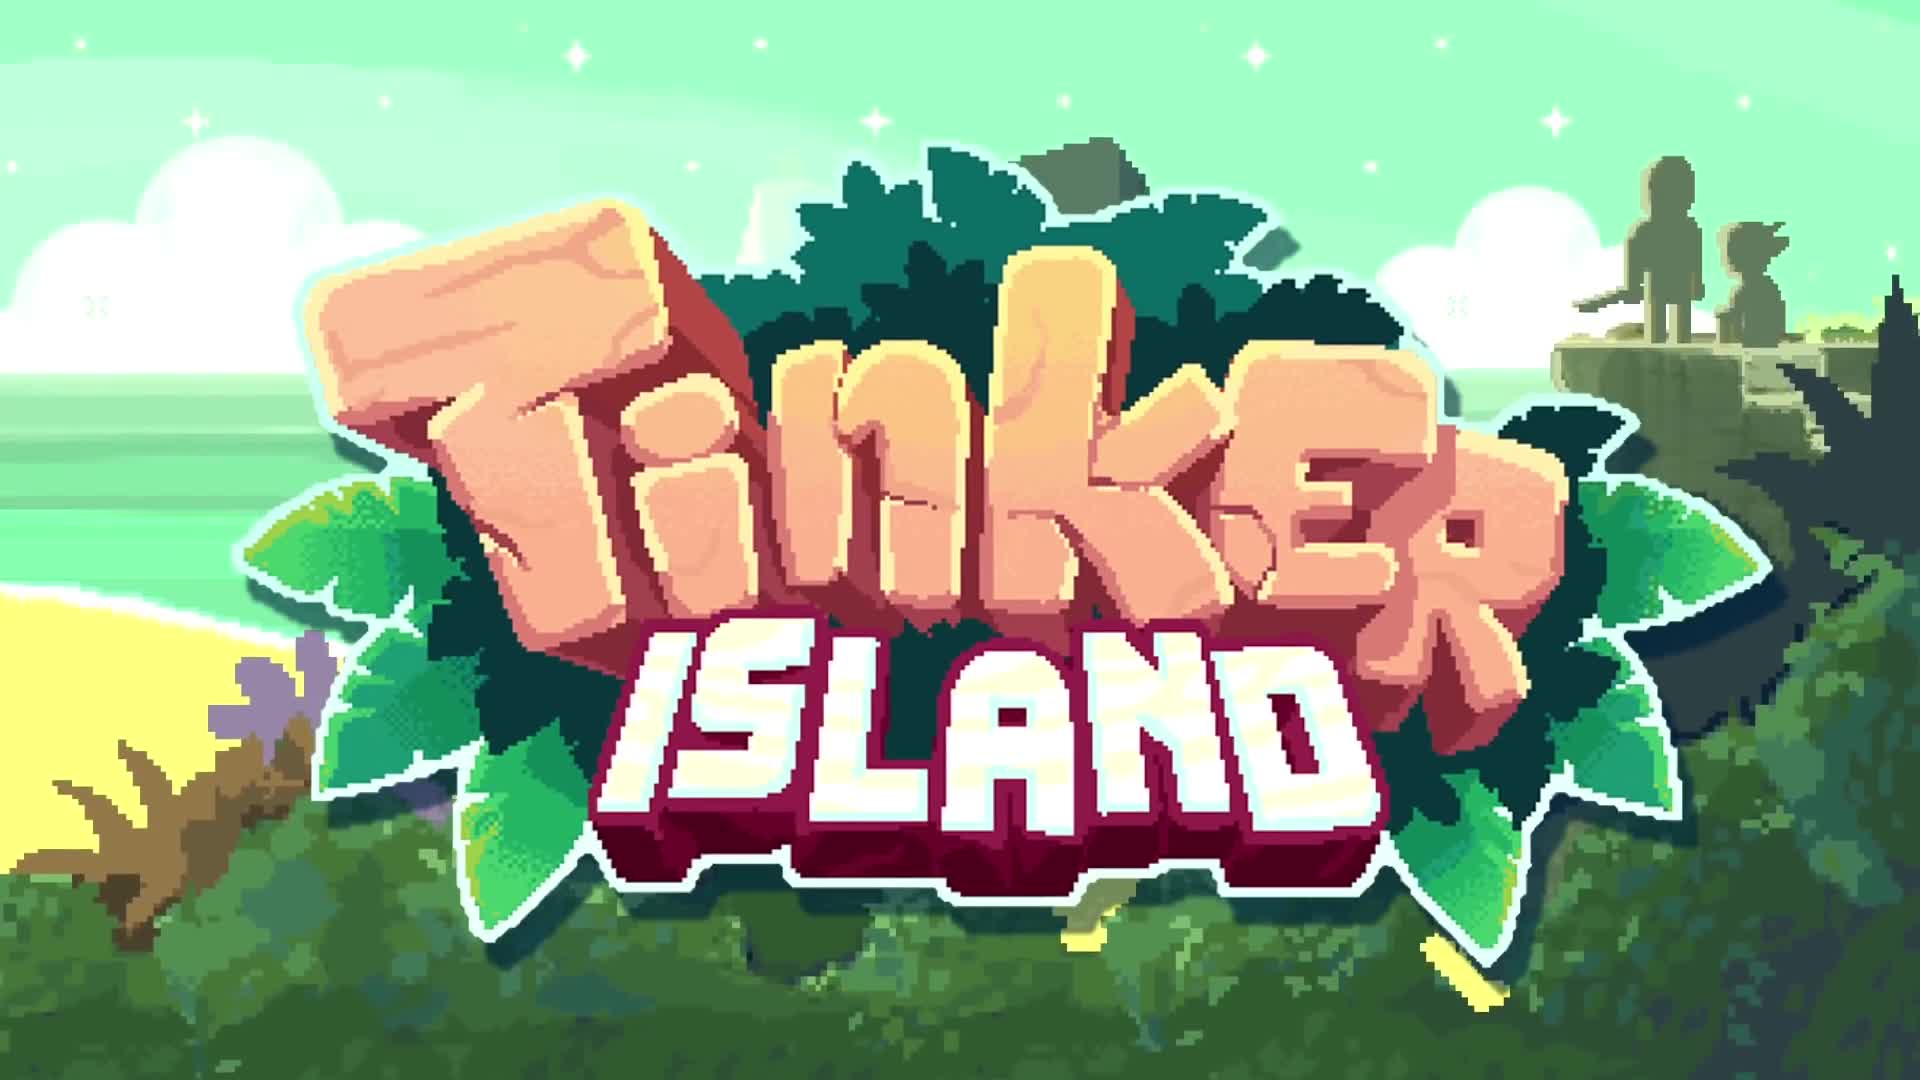 Tinker island. Tinker Island люк. Tinker Island 2 воображение. Tinker Island загадка эликсир. Tinker Island 2 т-100.